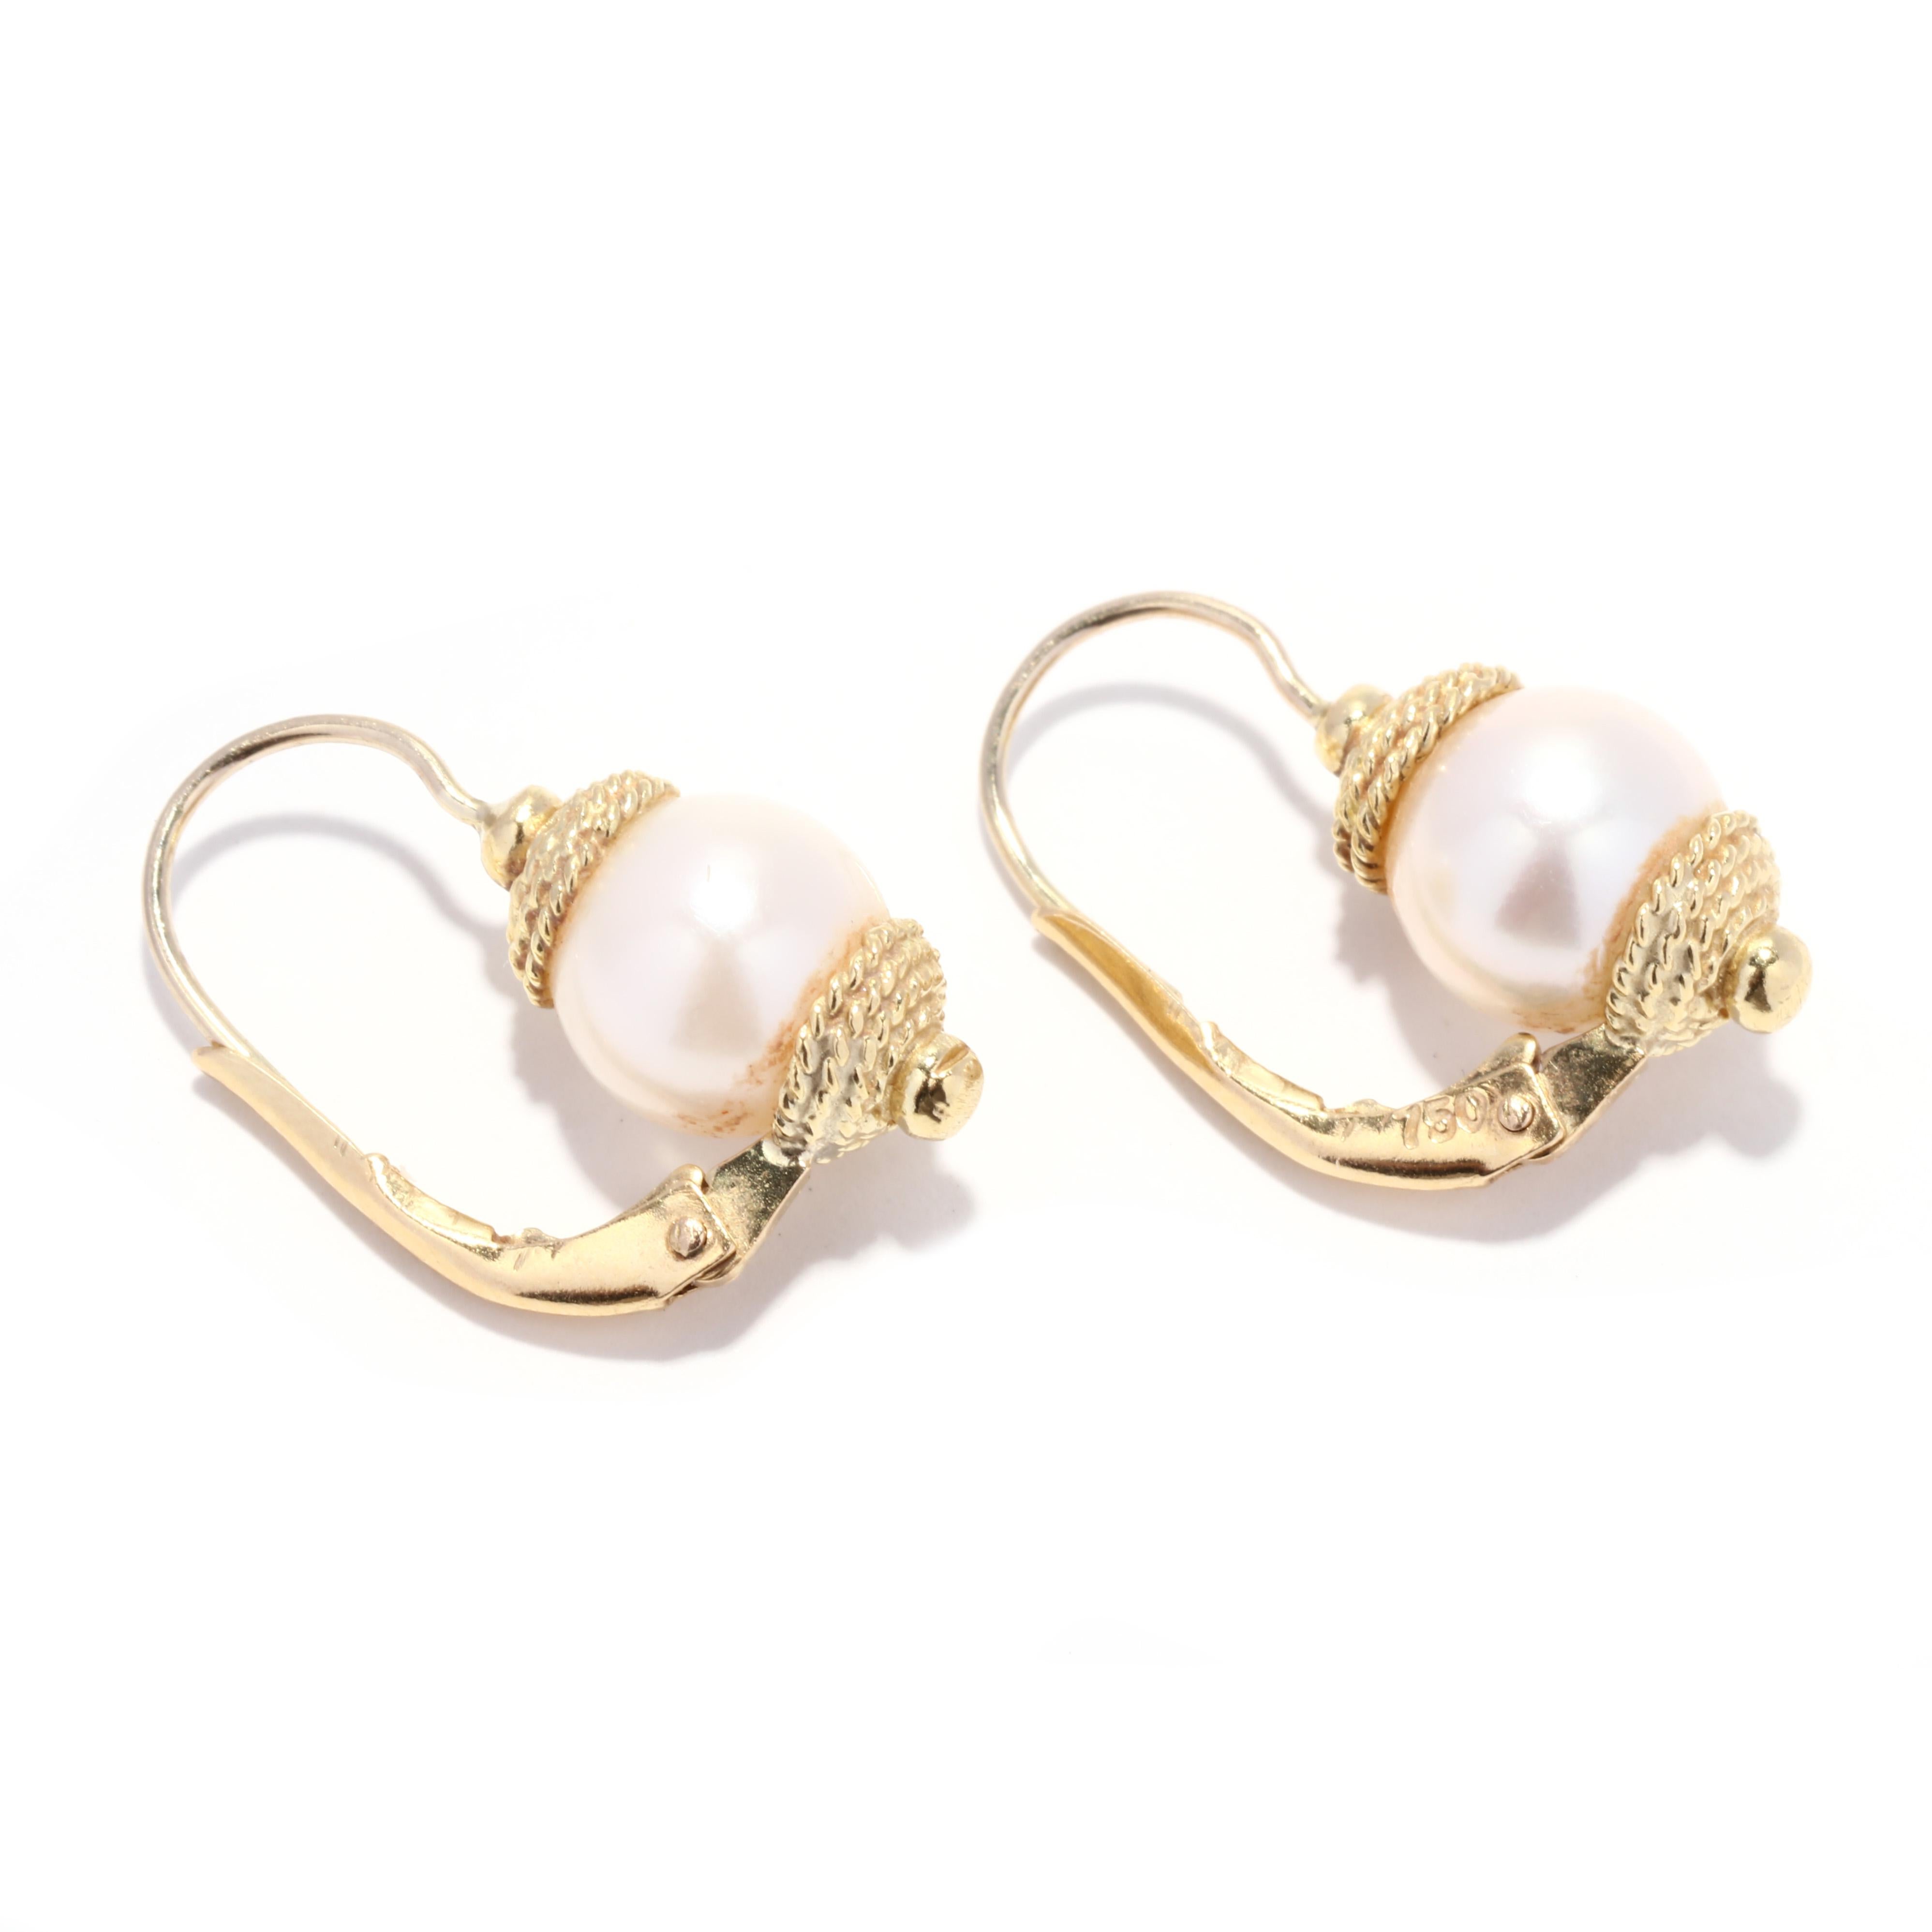 Ein Paar Vintage-Ohrringe aus 18 Karat Gelbgold mit weißen Perlen. Diese klassischen Ohrringe bestehen aus 8 mm großen weißen Perlen mit rosafarbenen Obertönen, Endkappen mit gedrehtem Seilmotiv und durchbrochenen Hebelverschlüssen.

Steine:
-